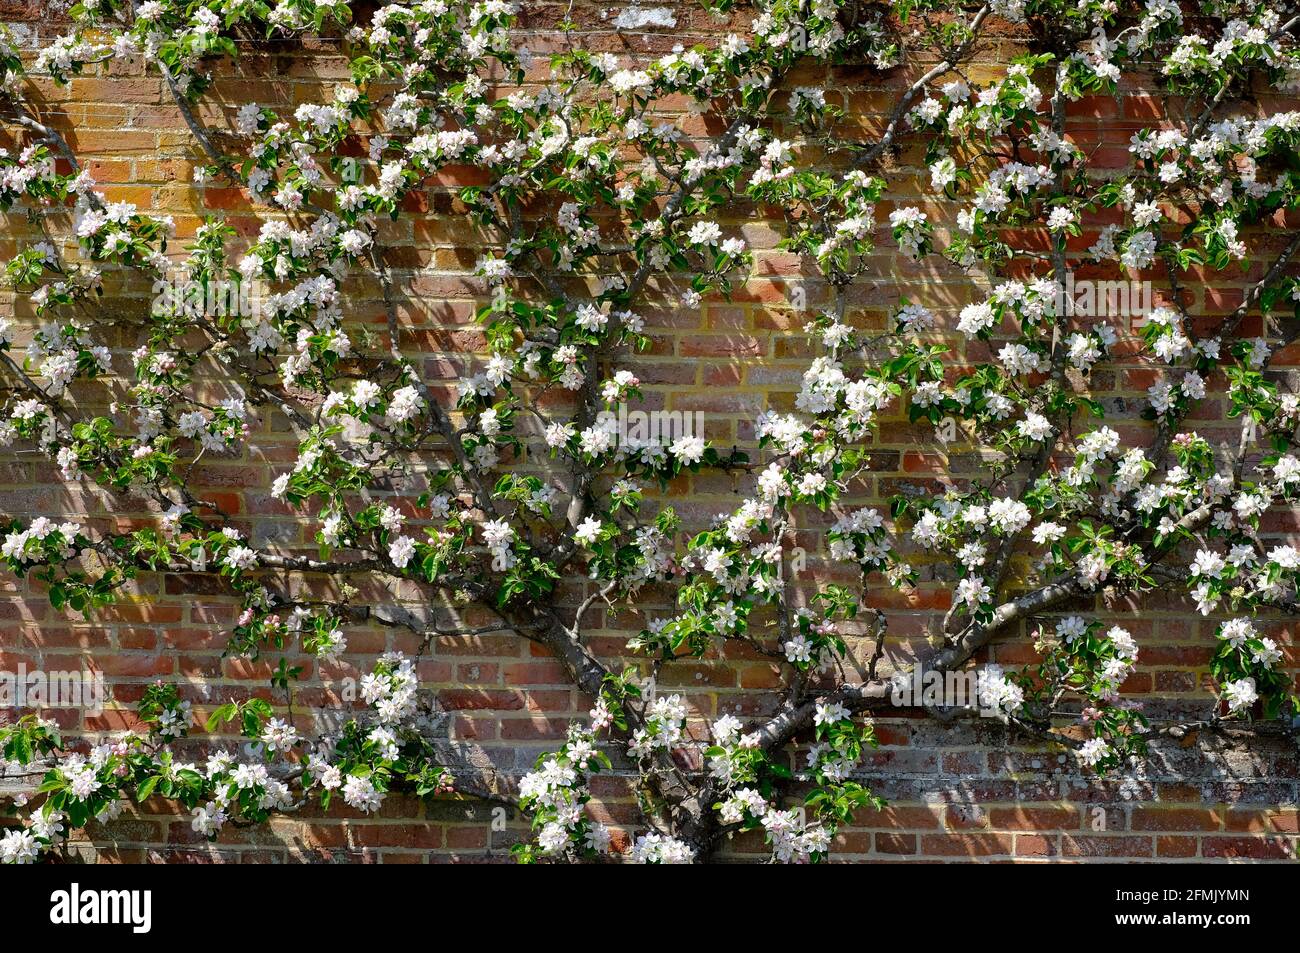 Weißer Apfel blüht auf Espalier im ummauerten Garten, norfolk, england Stockfoto